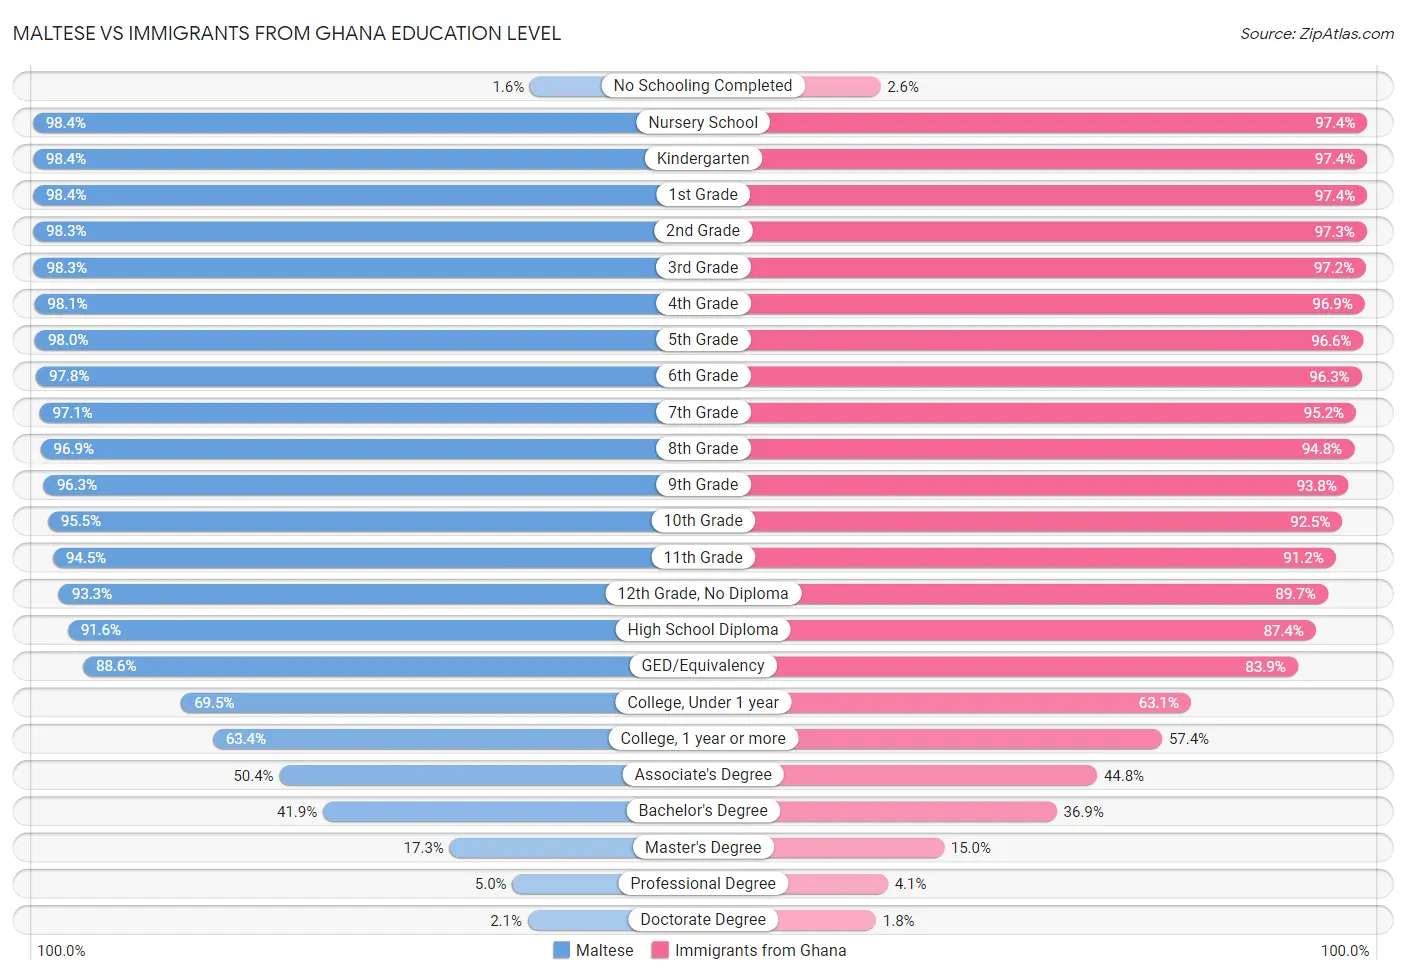 Maltese vs Immigrants from Ghana Education Level